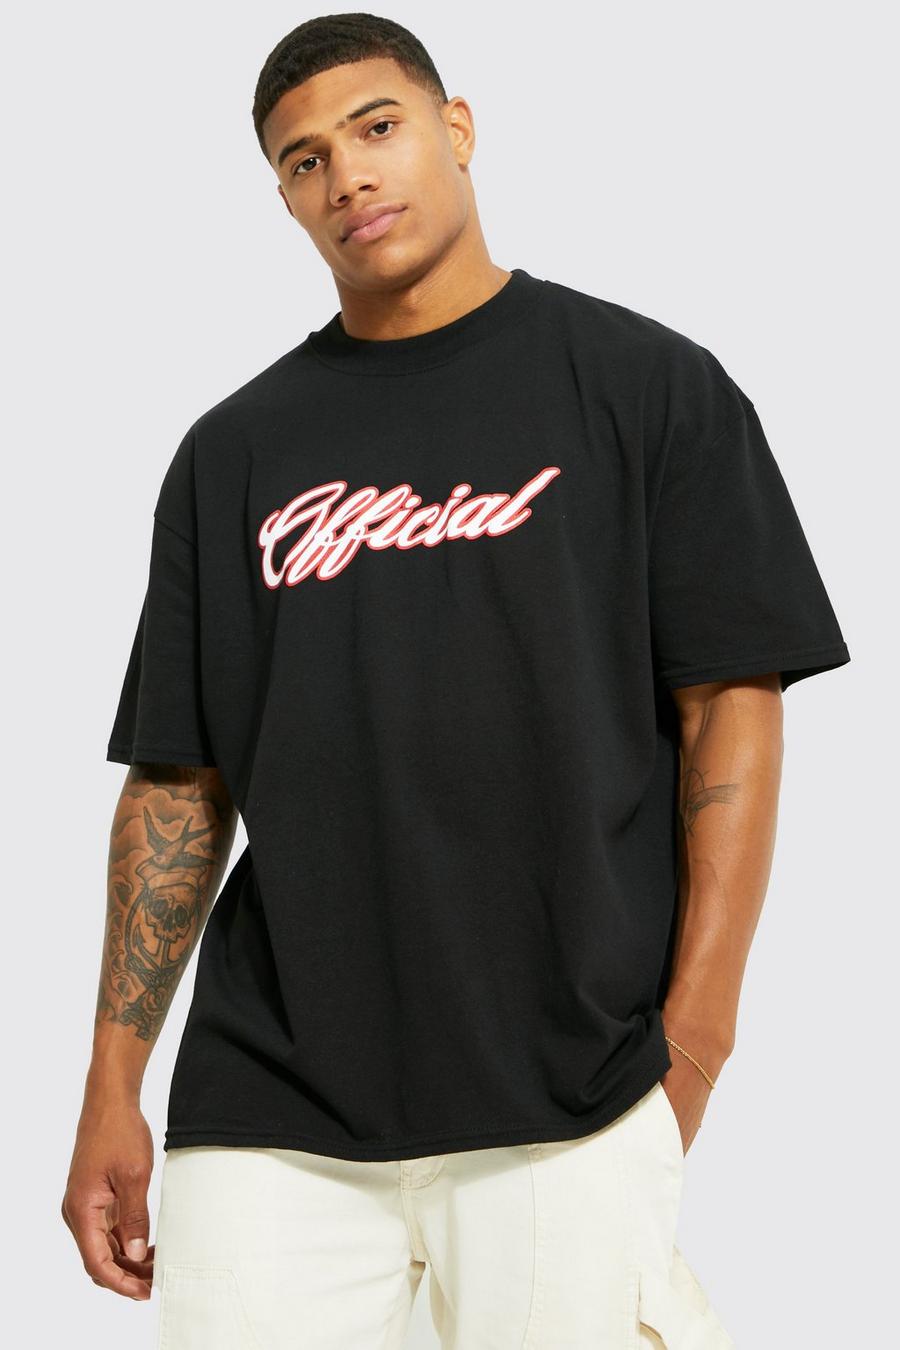 Black noir Oversized Offical Varsity Graphic T-shirt